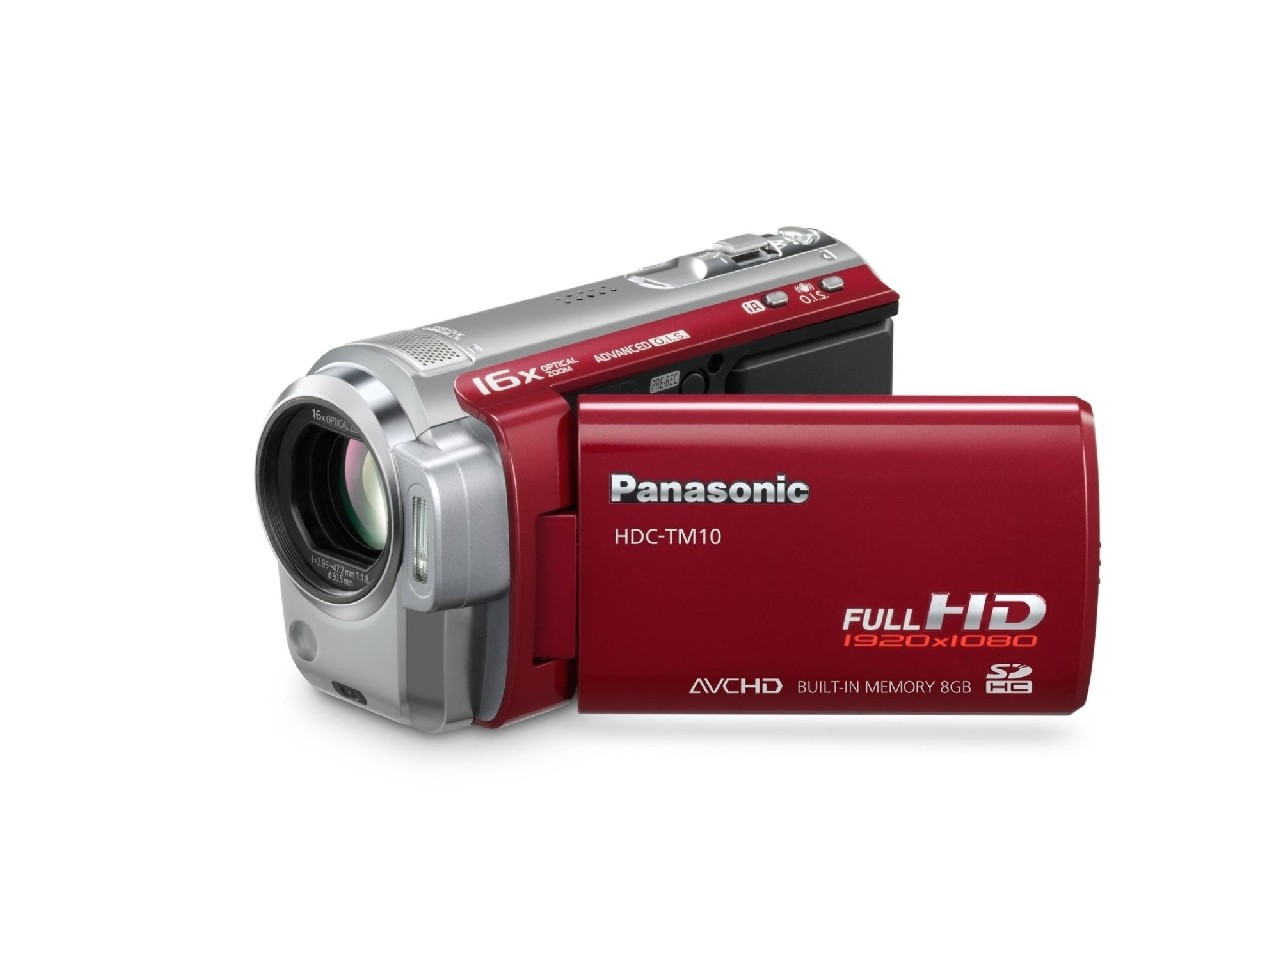 Najlżejsze kamery Full HD nagrywające w formacie AVCHD od Panasonic